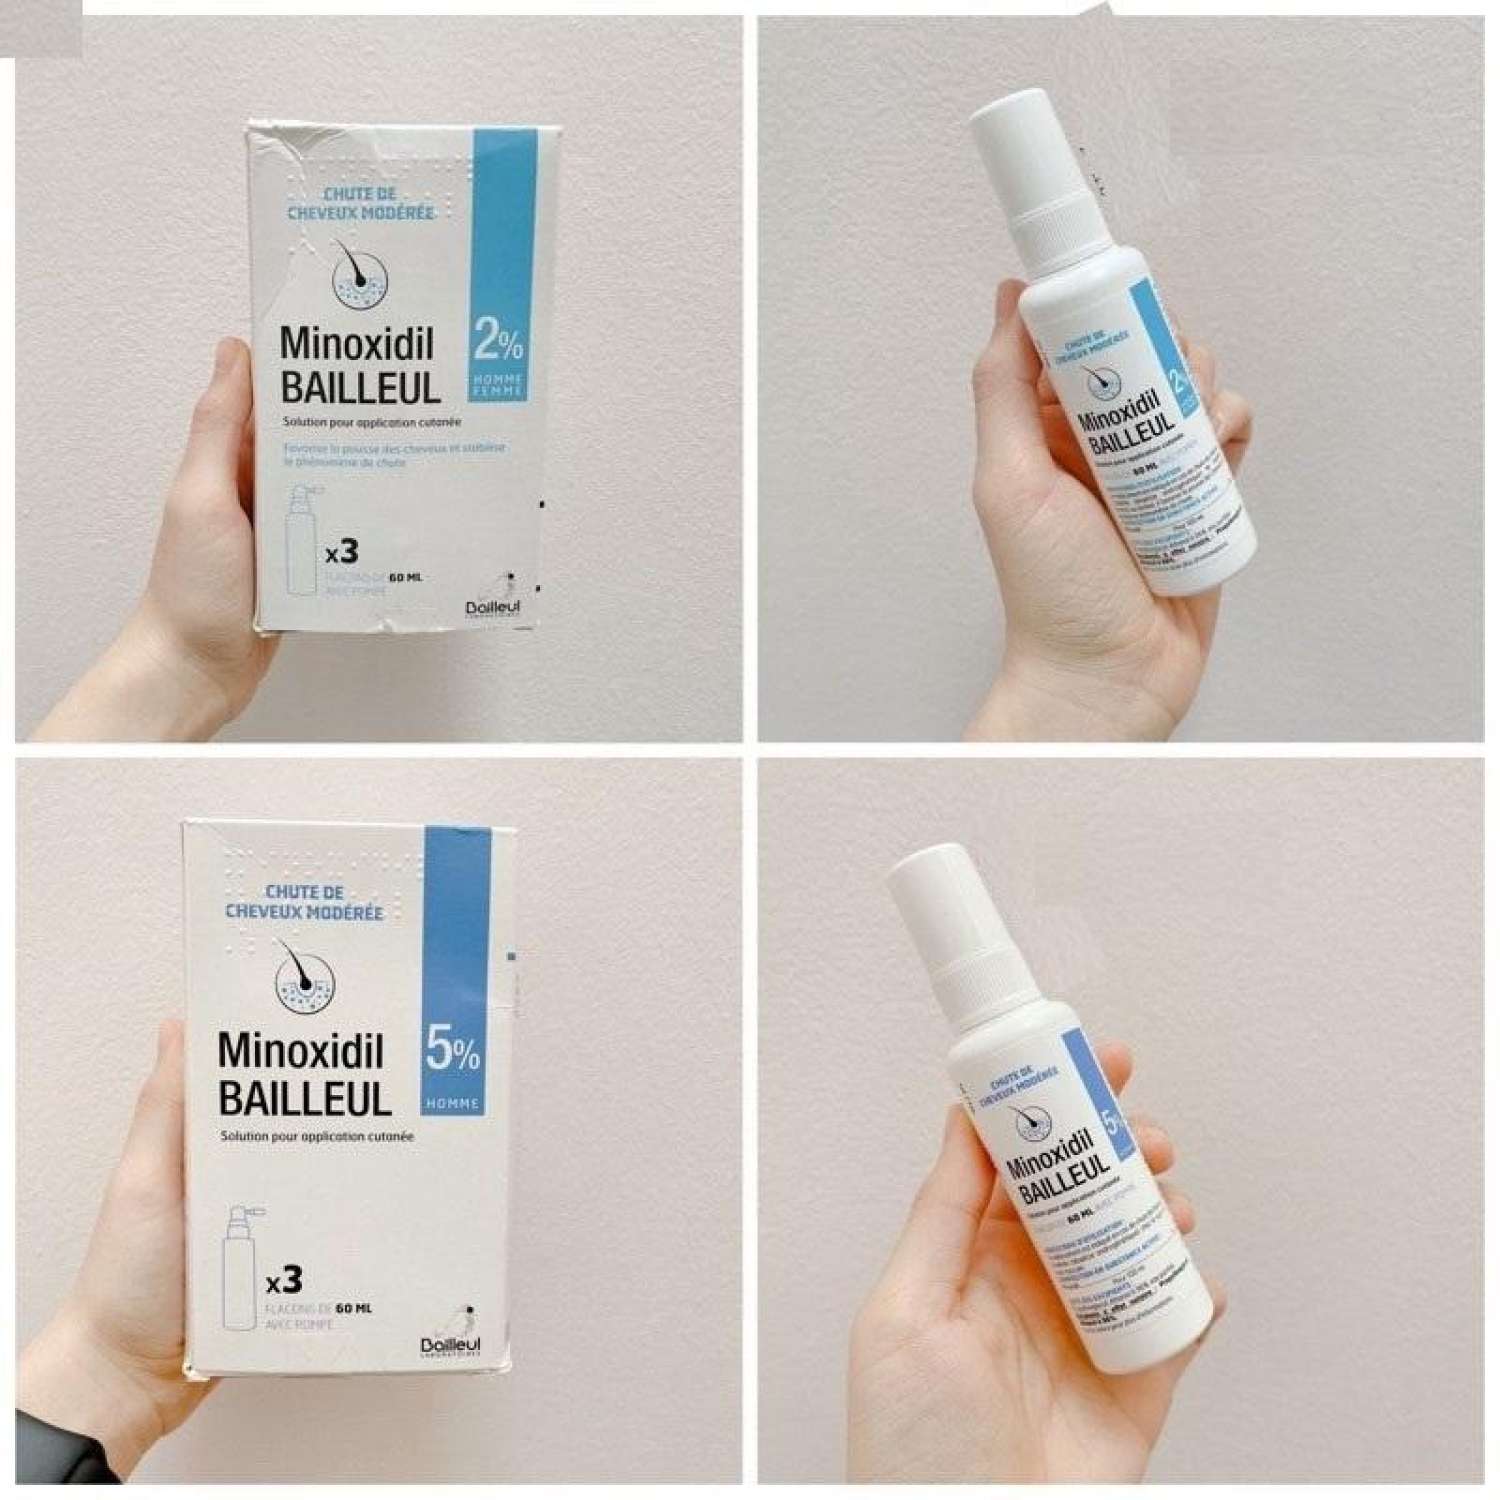 minoxidil 2% và 5 khác nhau như thế nào, thuốc xịt mọc tóc minoxidil 5, minoxidil 5% dạng xịt có tốt không, review xịt mọc tóc minoxidil, minoxidil bailleul 5, minoxidil bailleul 2, minoxidil 5% dạng xịt, ngừng sử dụng minoxidil,